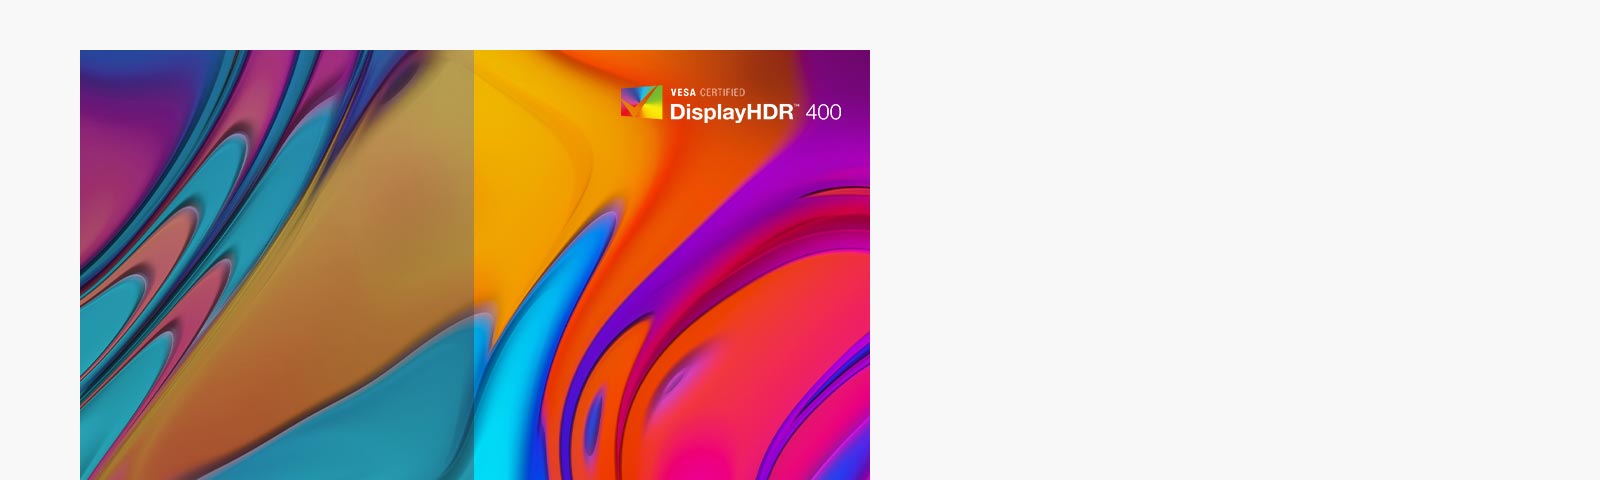 המסך תומך בטכנולוגיית VESA DisplayHDR™ 600 עם בהירות וניגודיות רחבות היקף, ומקנה חוויה ויזואלית דרמטית סוחפת למשחקי, לסרטוני ולתמונות HDR.